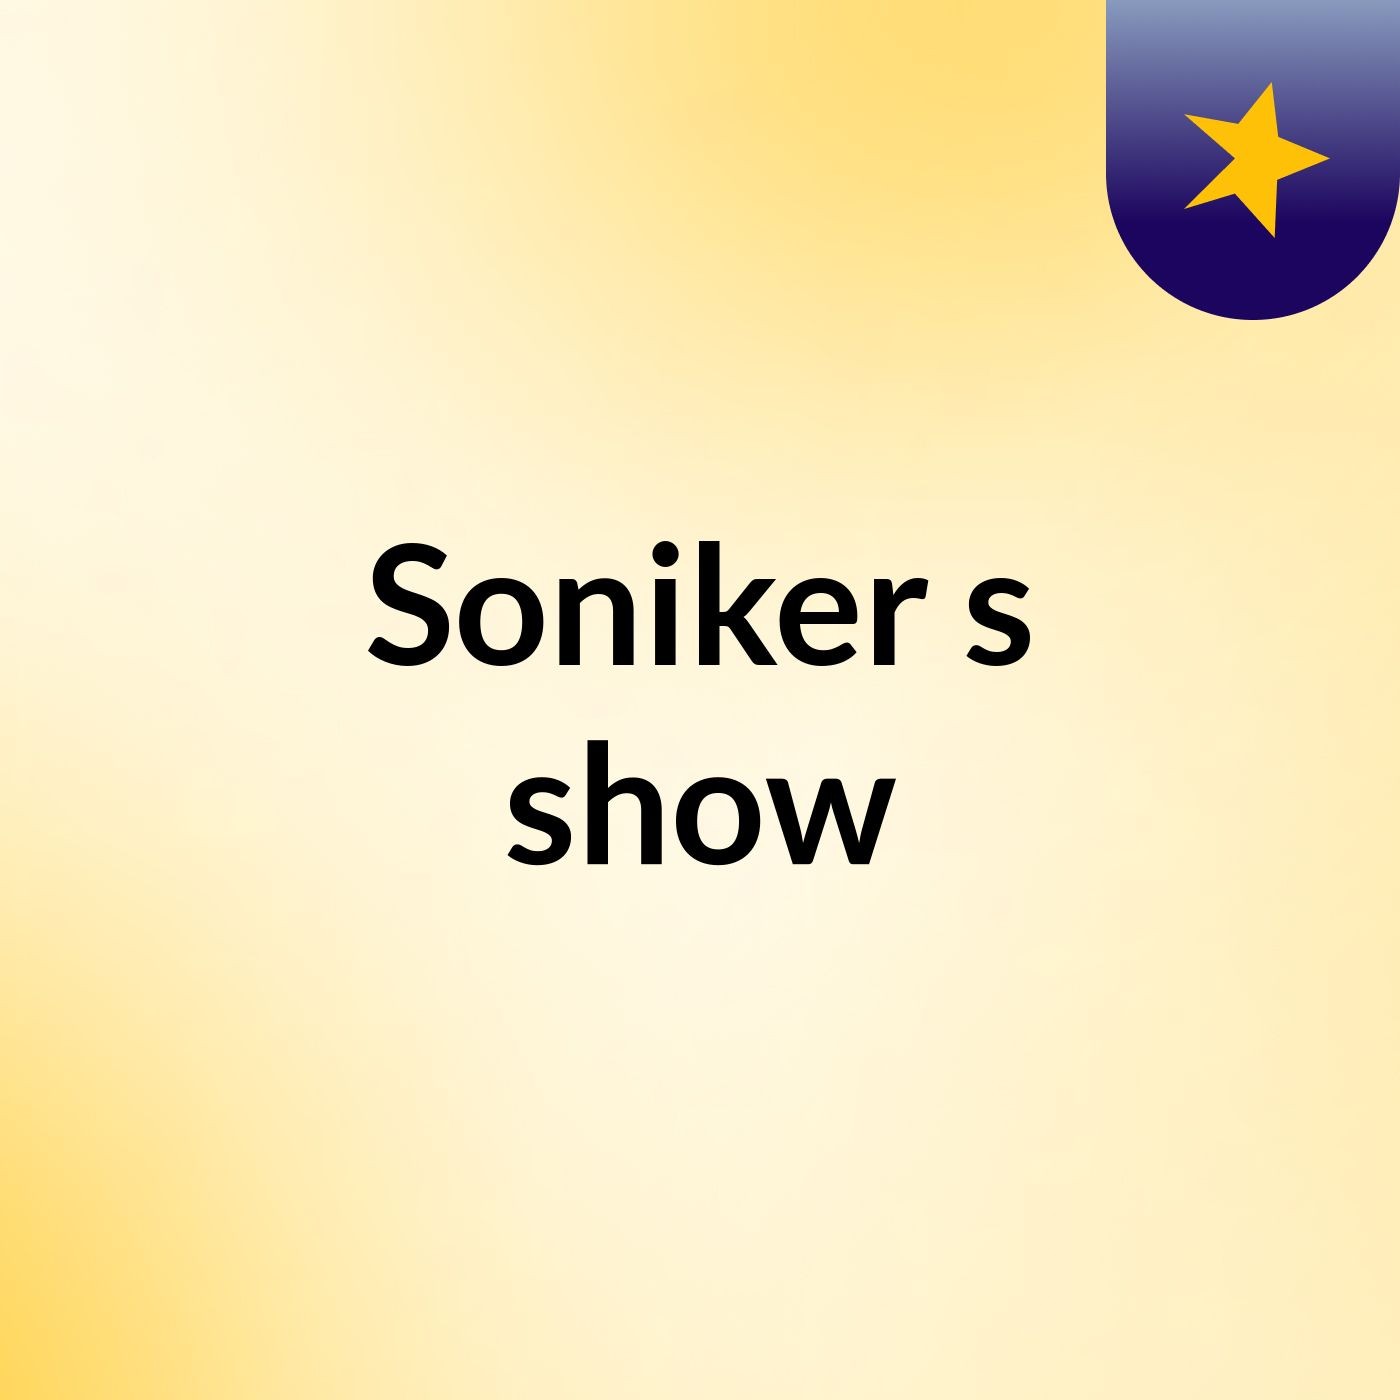 Soniker's show